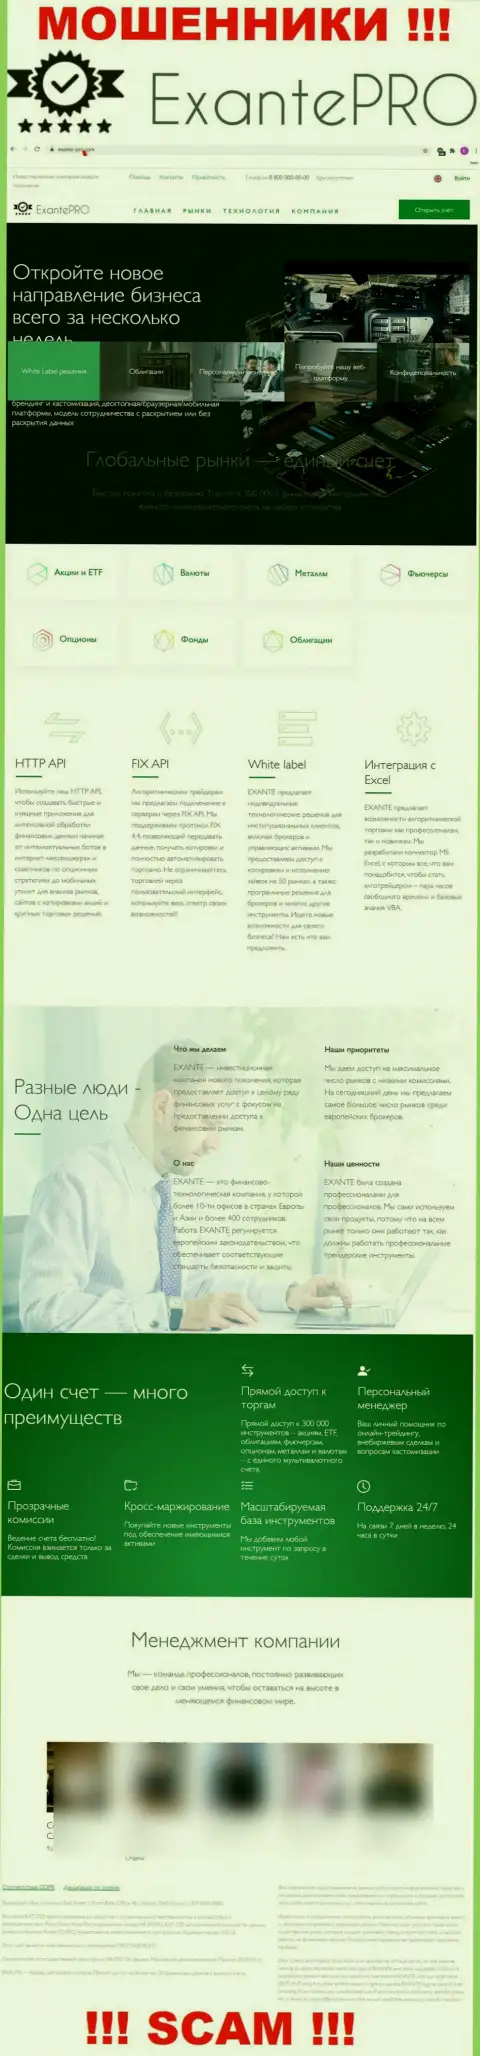 Обзор официального web-портала жуликов ЭКЗАНТЕПро